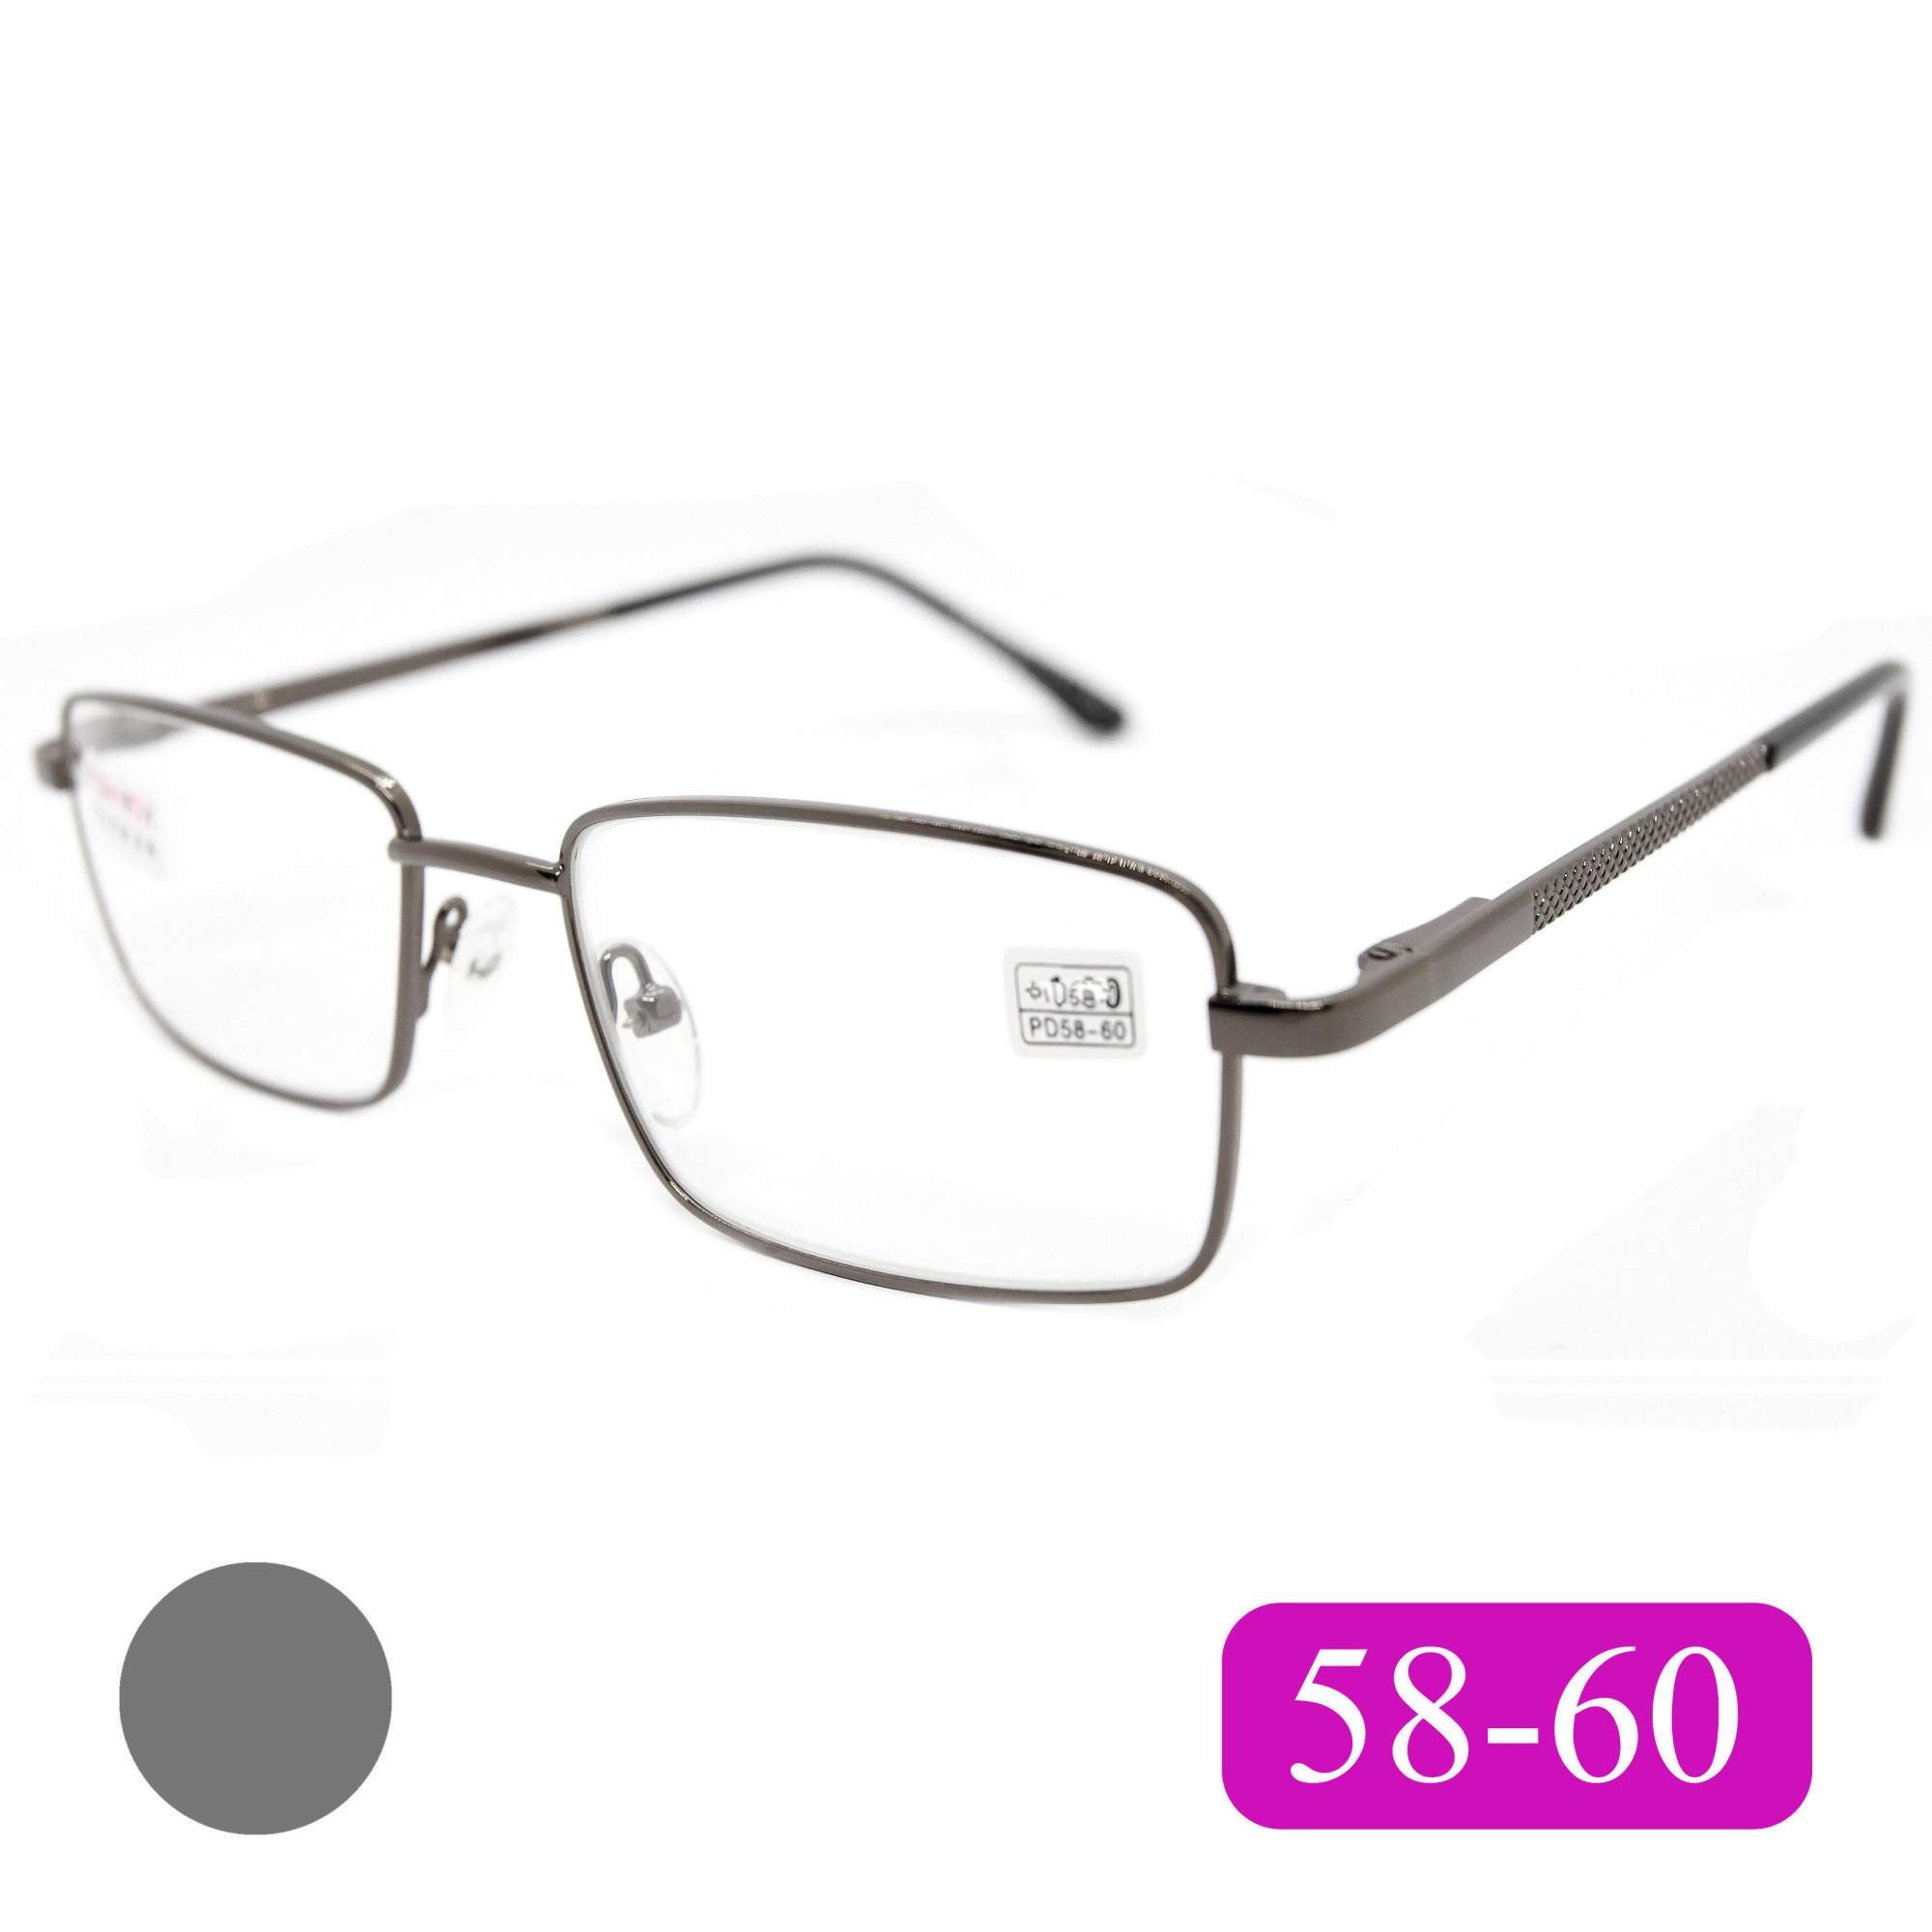 Готовые очки Fedrov 569, со стеклянной линзой, +4,00, без футляра, цвет серый, РЦ 58-60